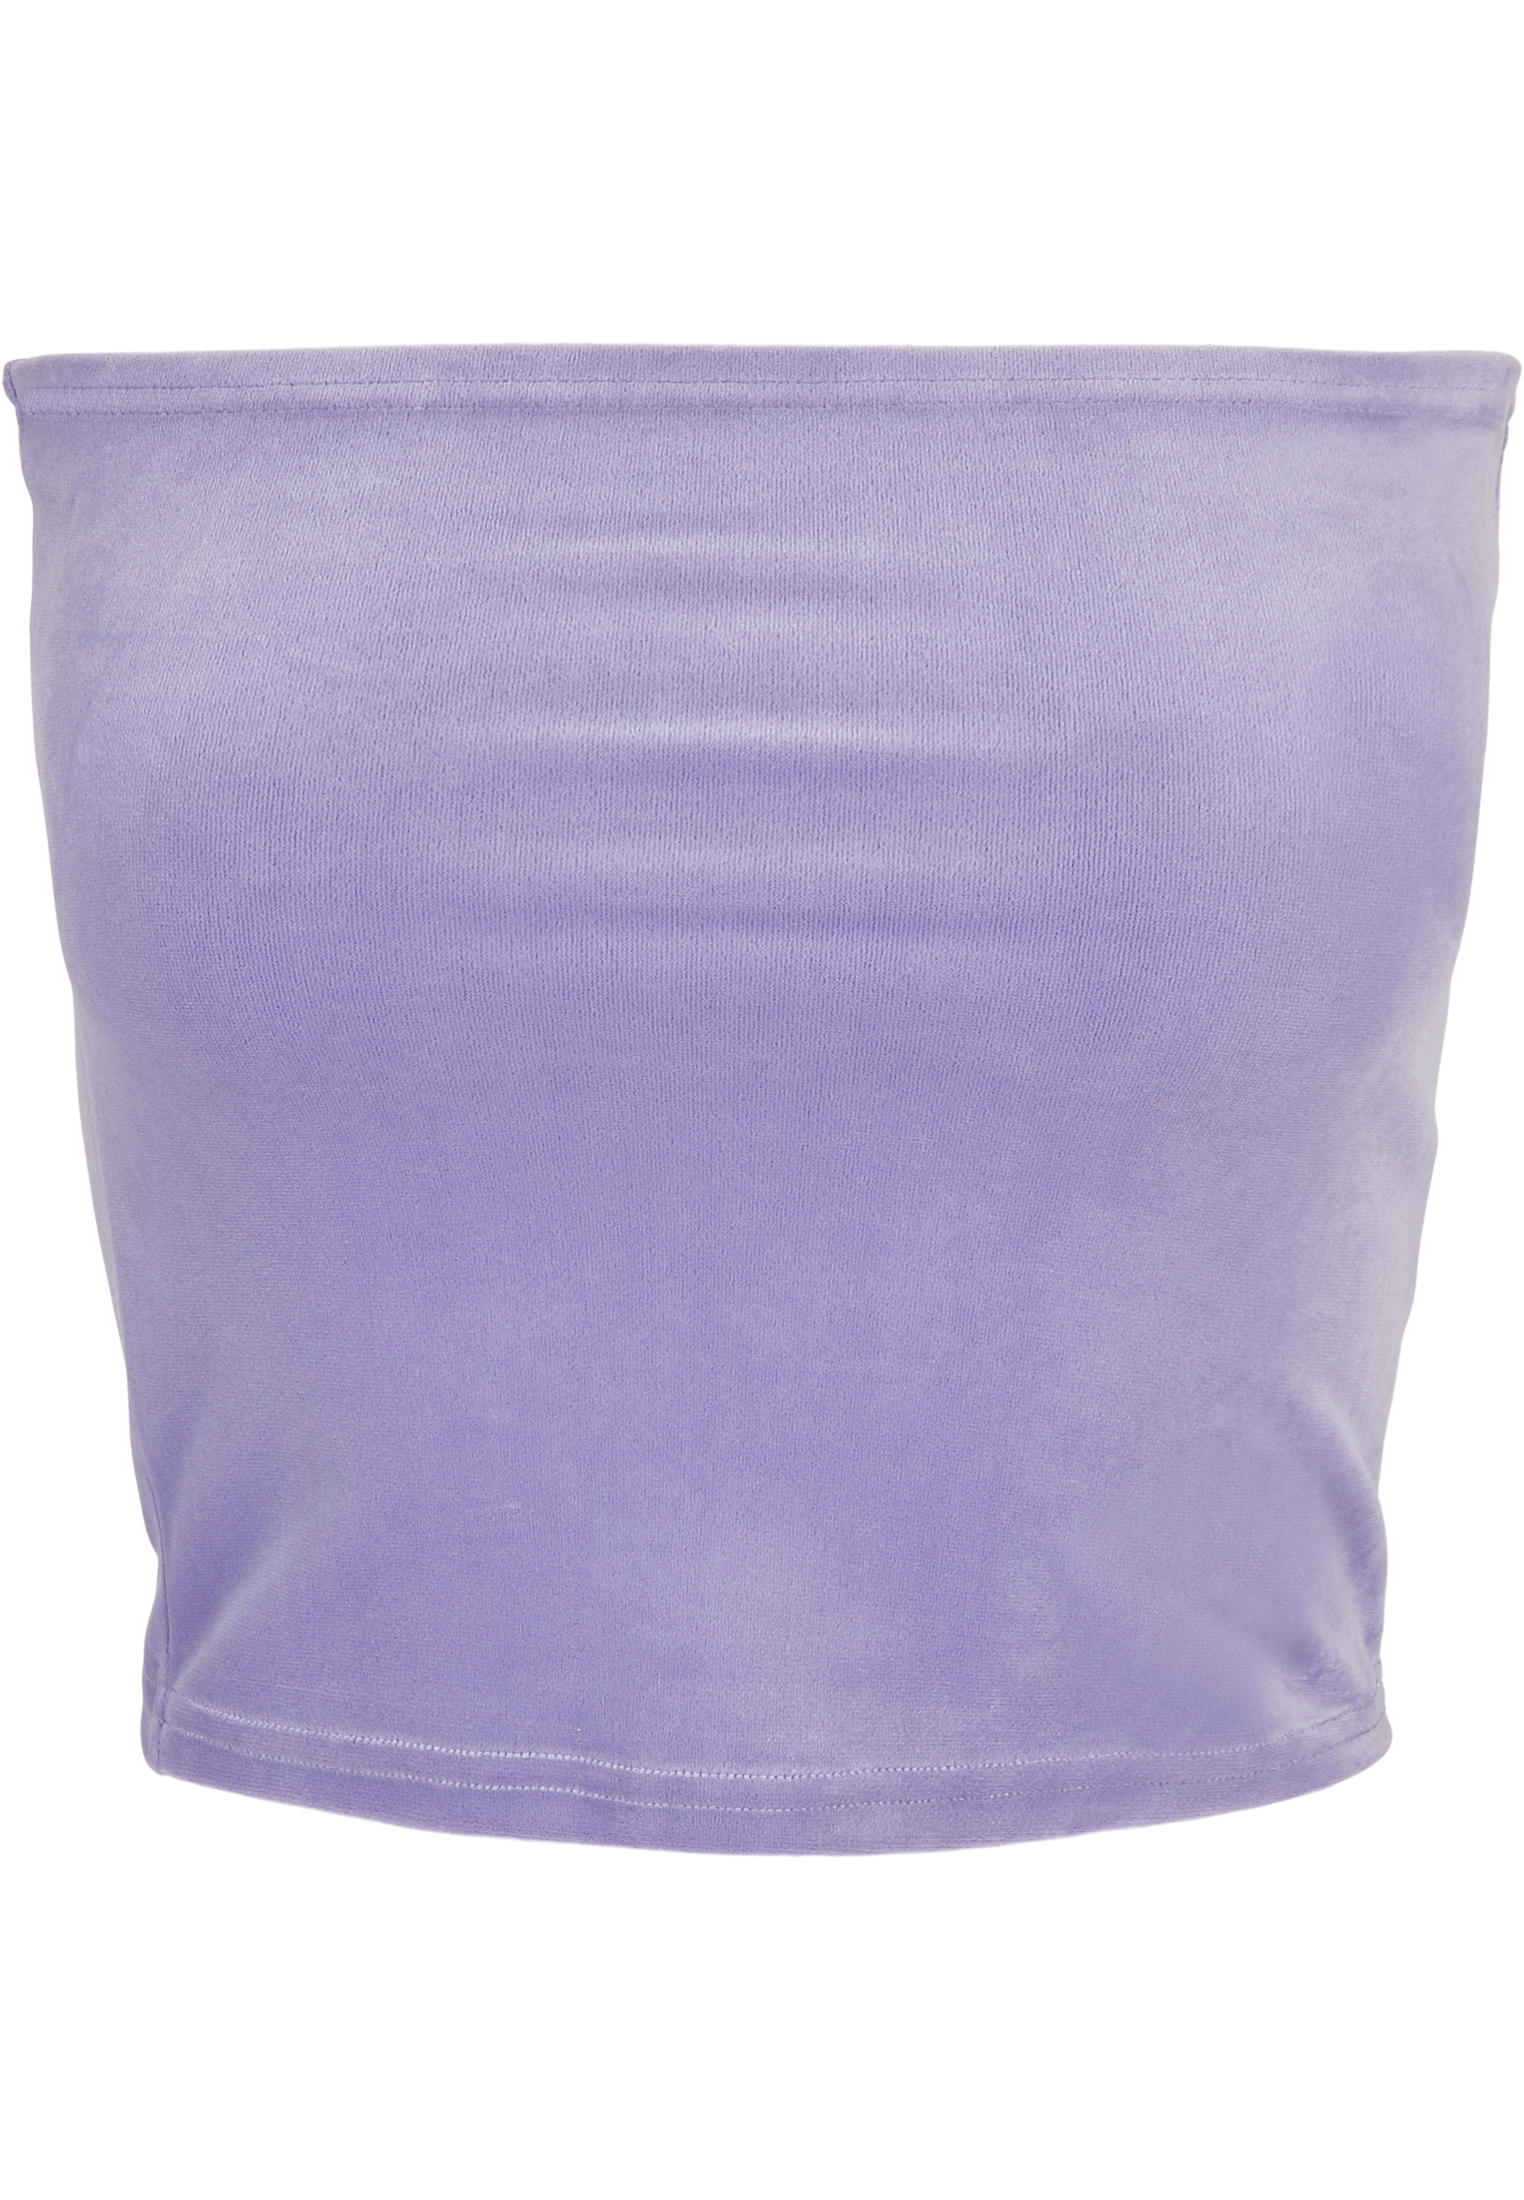 Tops & Tanks Ladies Short Velvet Tube Top in Farbe lavender